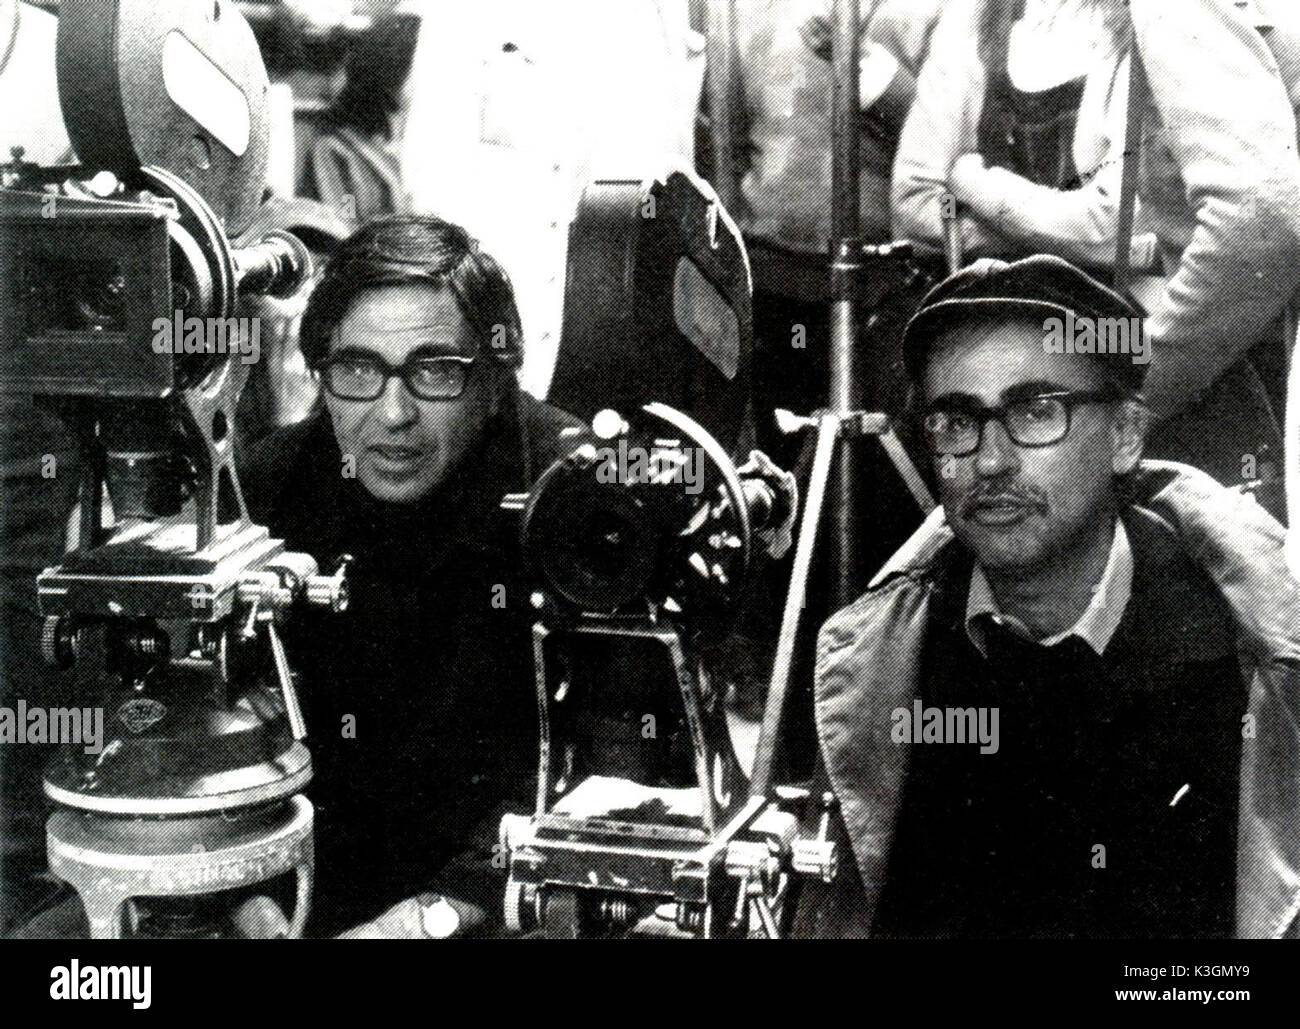 PAOLO AND VITTORIO TAVIANI FILMING IL PRATO SI 10279/11 IL PRATO Directors PAOLO and VITTORIO TAVIANI     Date: 1979 Stock Photo